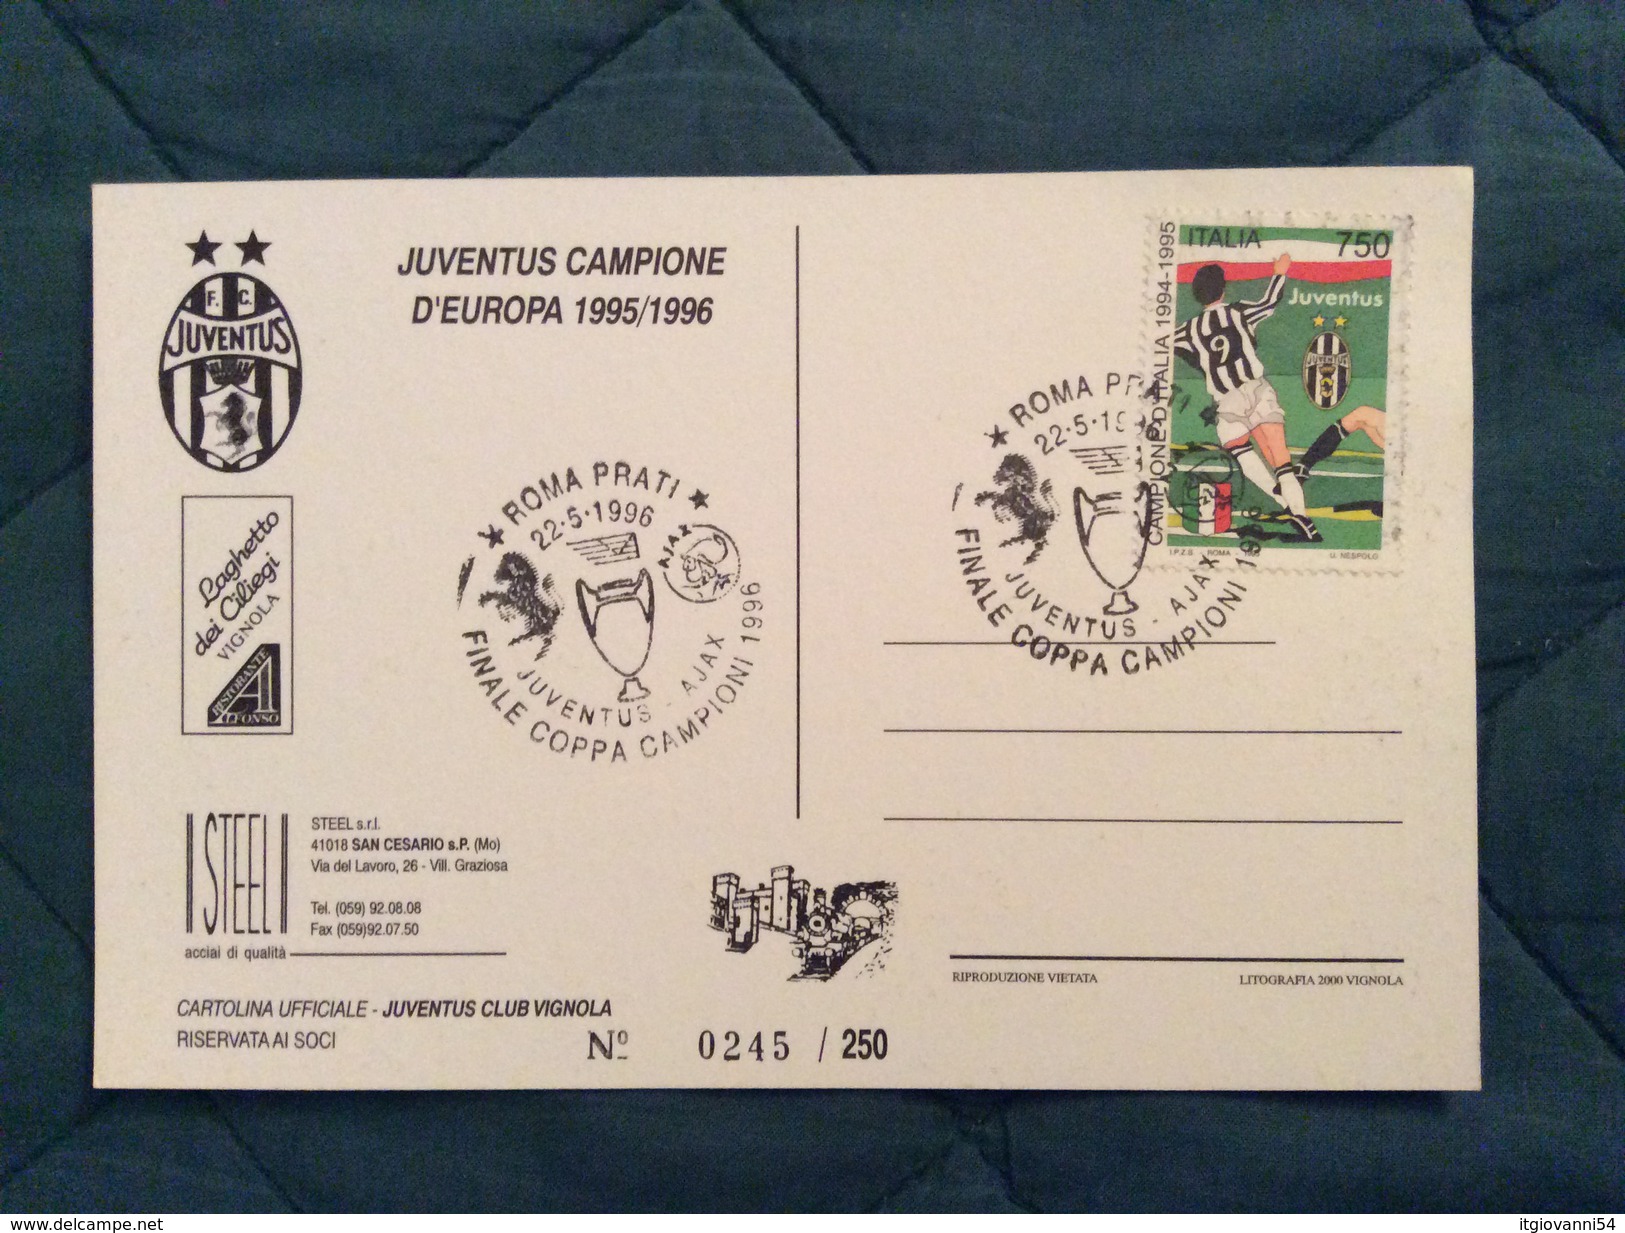 Cartolina Ufficiale Juventus Club Vignola (MO) Juventus Campione D'Europa 1995/96 - Calcio